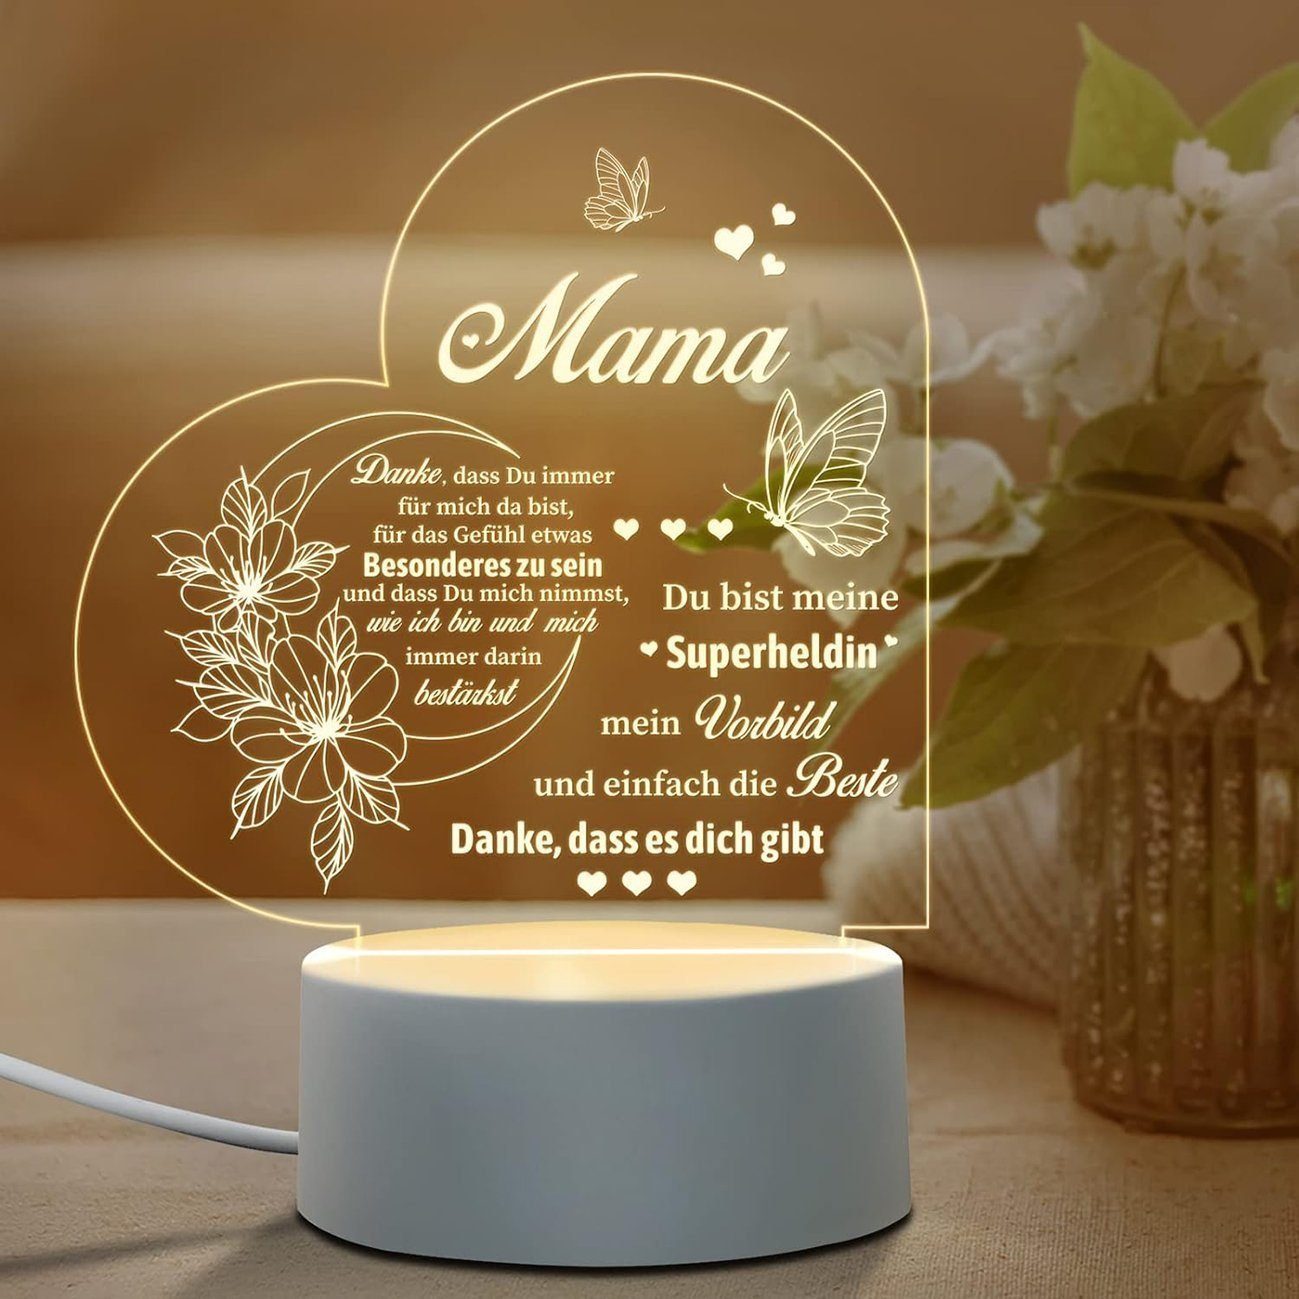 yozhiqu LED Dekolicht LED-Lampe, Nachtlicht, personalisiertes Geschenk für Mama, Hochwertige Qualität: Blendfreies, flackerfreies Licht., Geburtstagsgeschenk für Mama (Herz)Geschenke